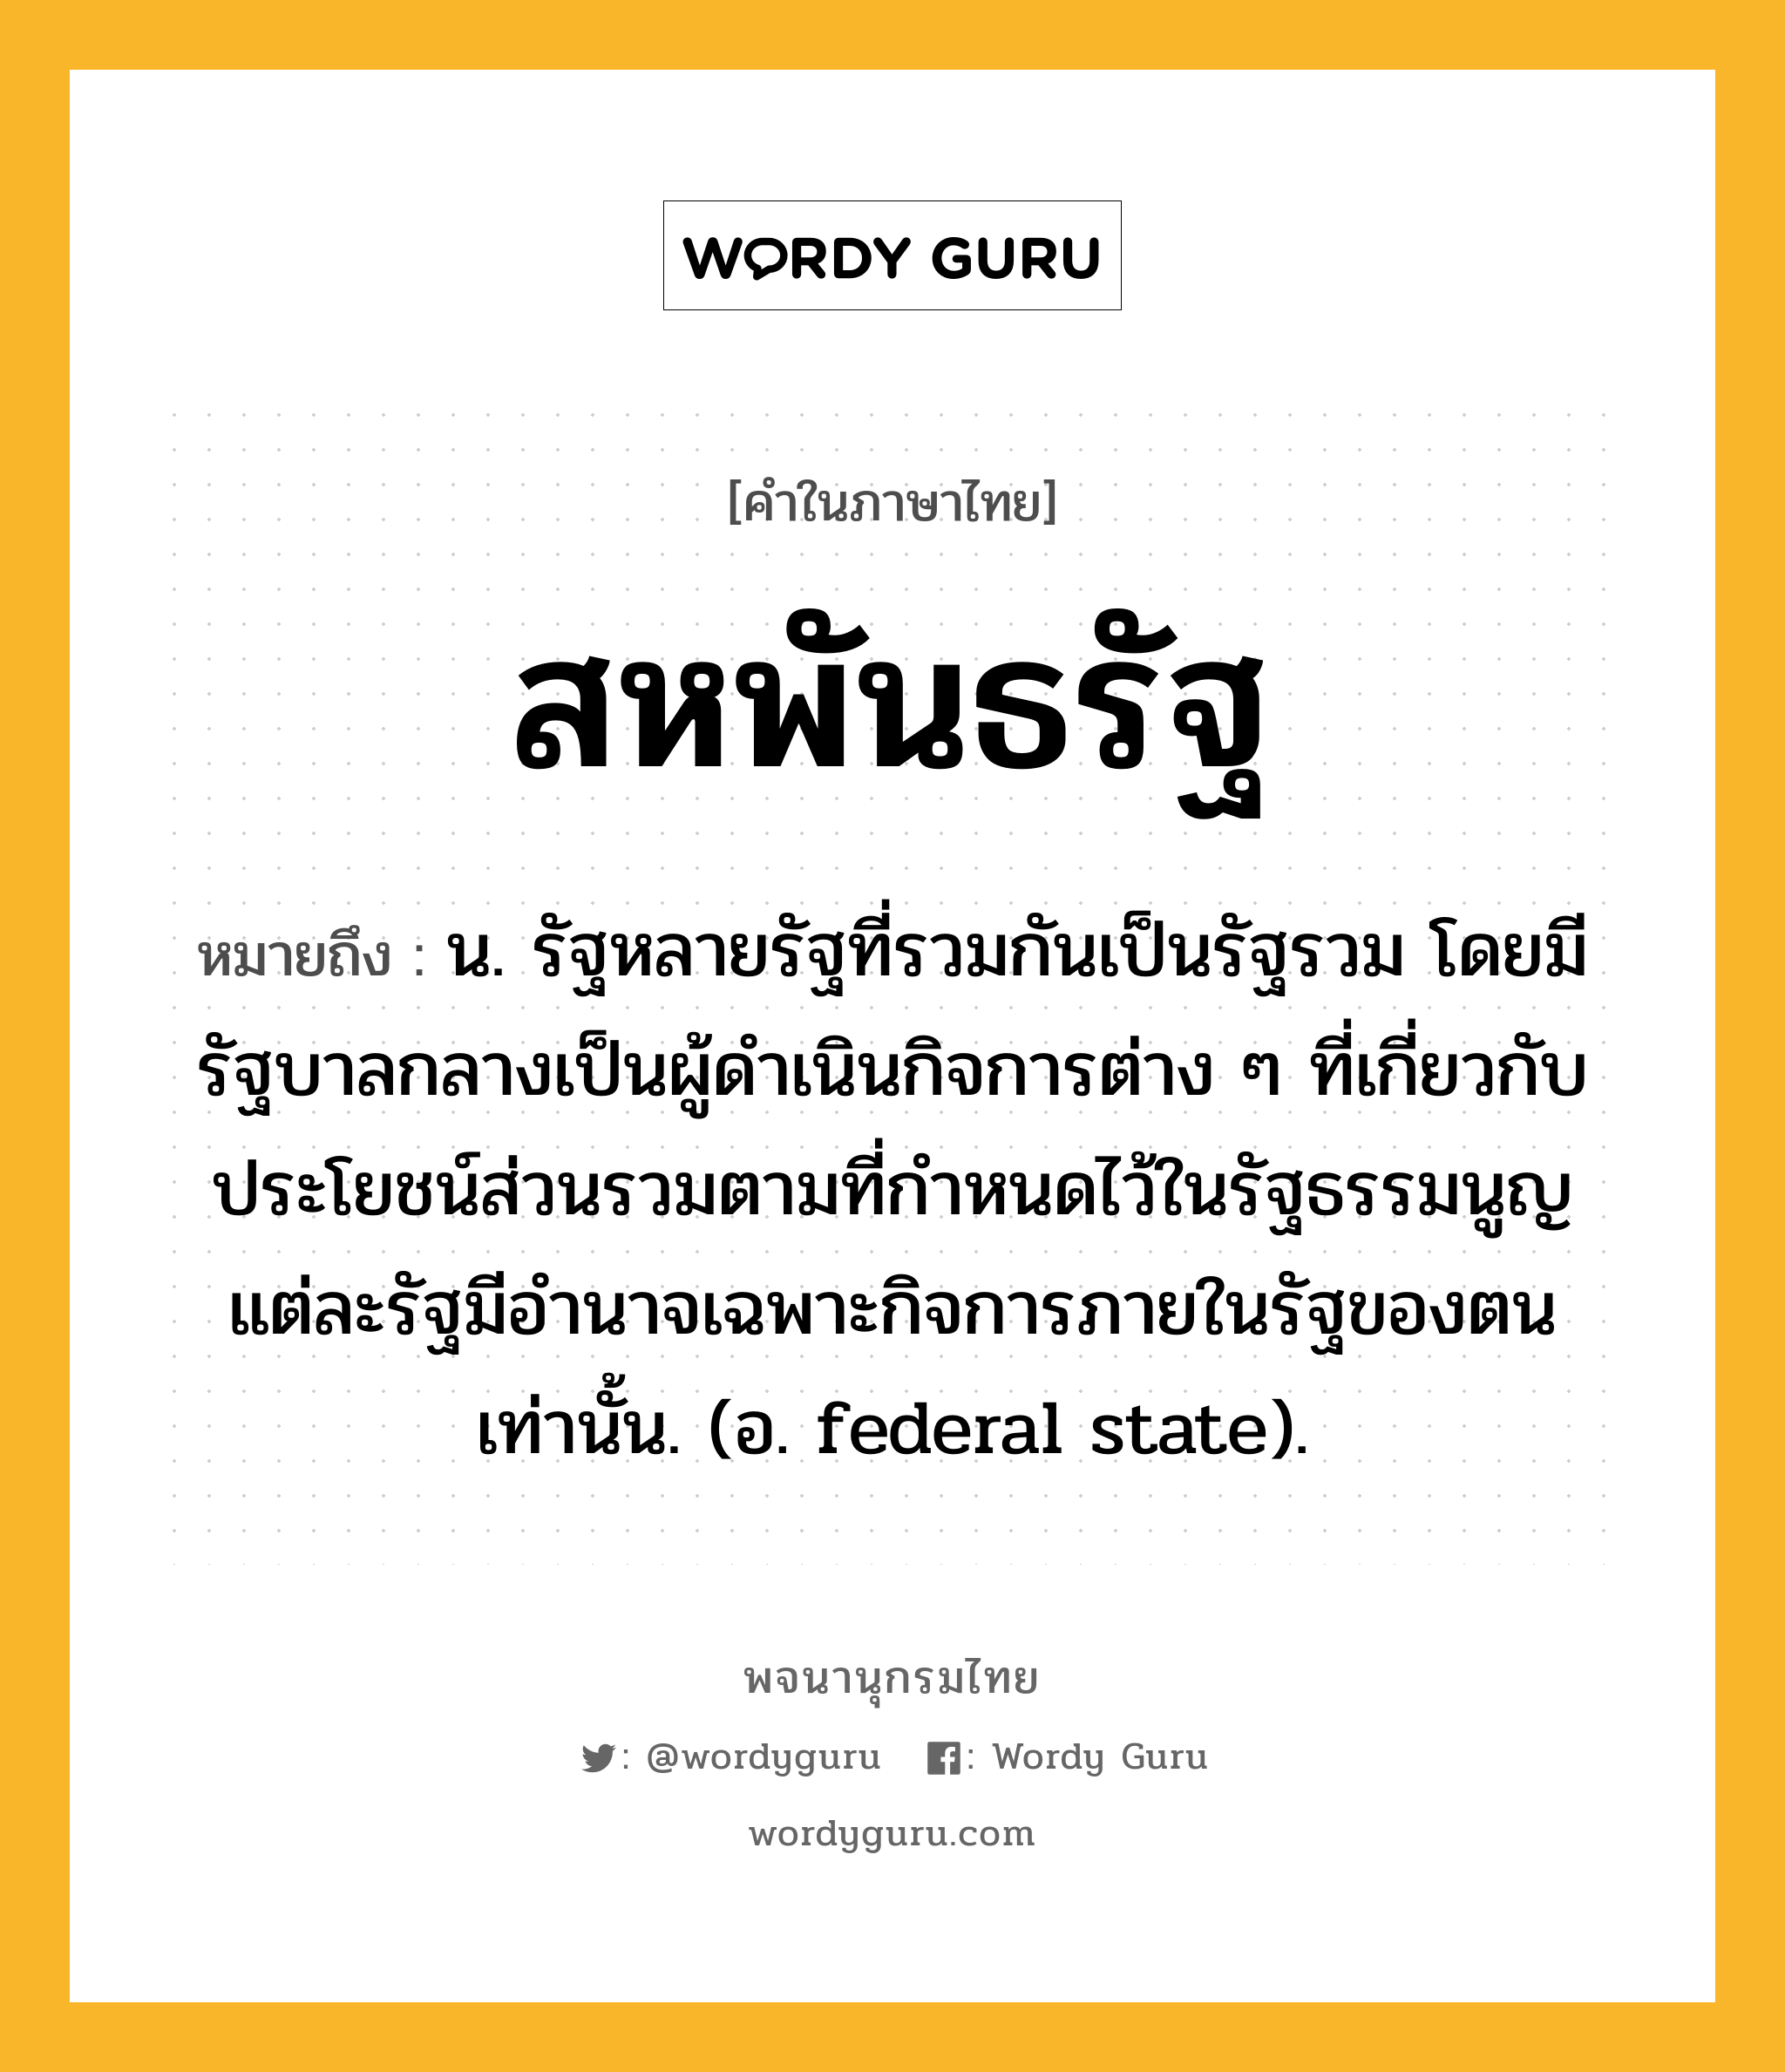 สหพันธรัฐ หมายถึงอะไร?, คำในภาษาไทย สหพันธรัฐ หมายถึง น. รัฐหลายรัฐที่รวมกันเป็นรัฐรวม โดยมีรัฐบาลกลางเป็นผู้ดําเนินกิจการต่าง ๆ ที่เกี่ยวกับประโยชน์ส่วนรวมตามที่กําหนดไว้ในรัฐธรรมนูญ แต่ละรัฐมีอํานาจเฉพาะกิจการภายในรัฐของตนเท่านั้น. (อ. federal state).